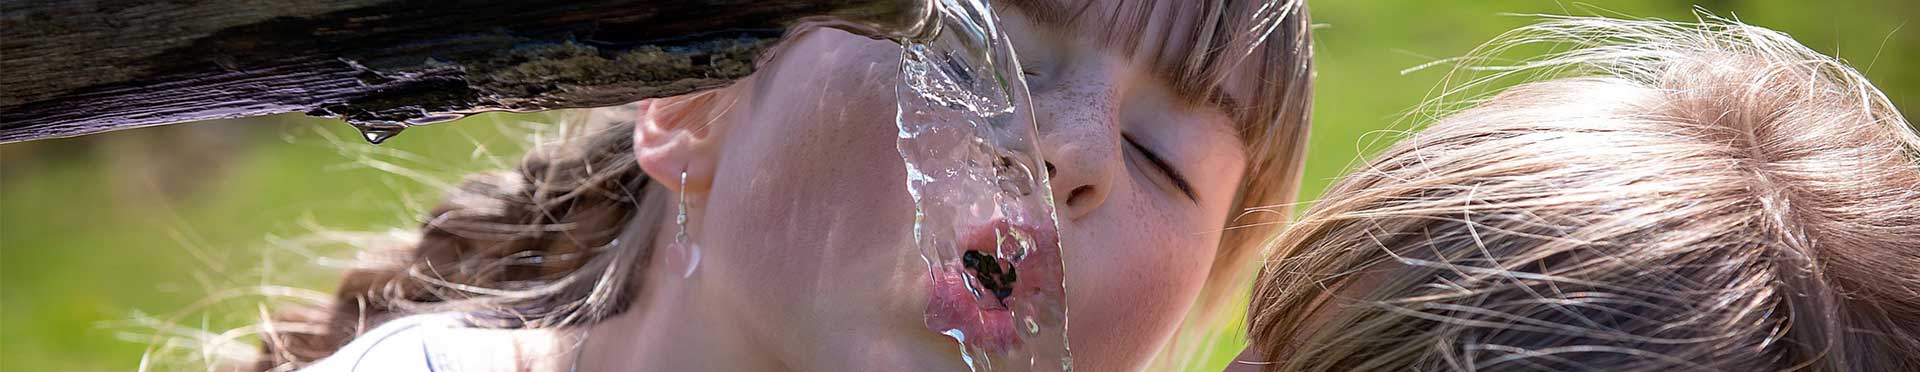 niños bebiendo de fuente de agua clorada